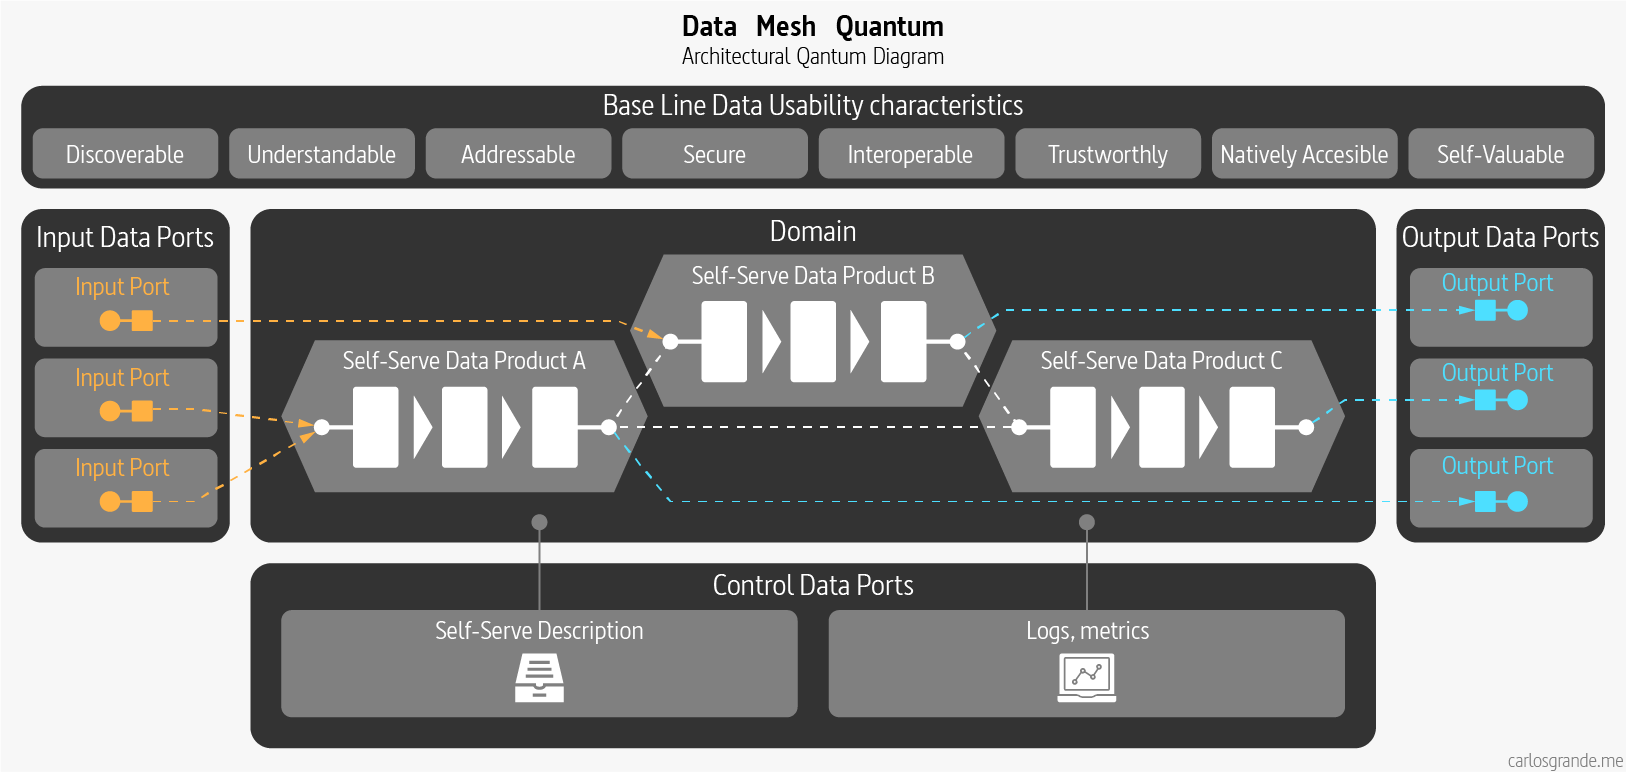 Data Mesh Quantum: Data Products